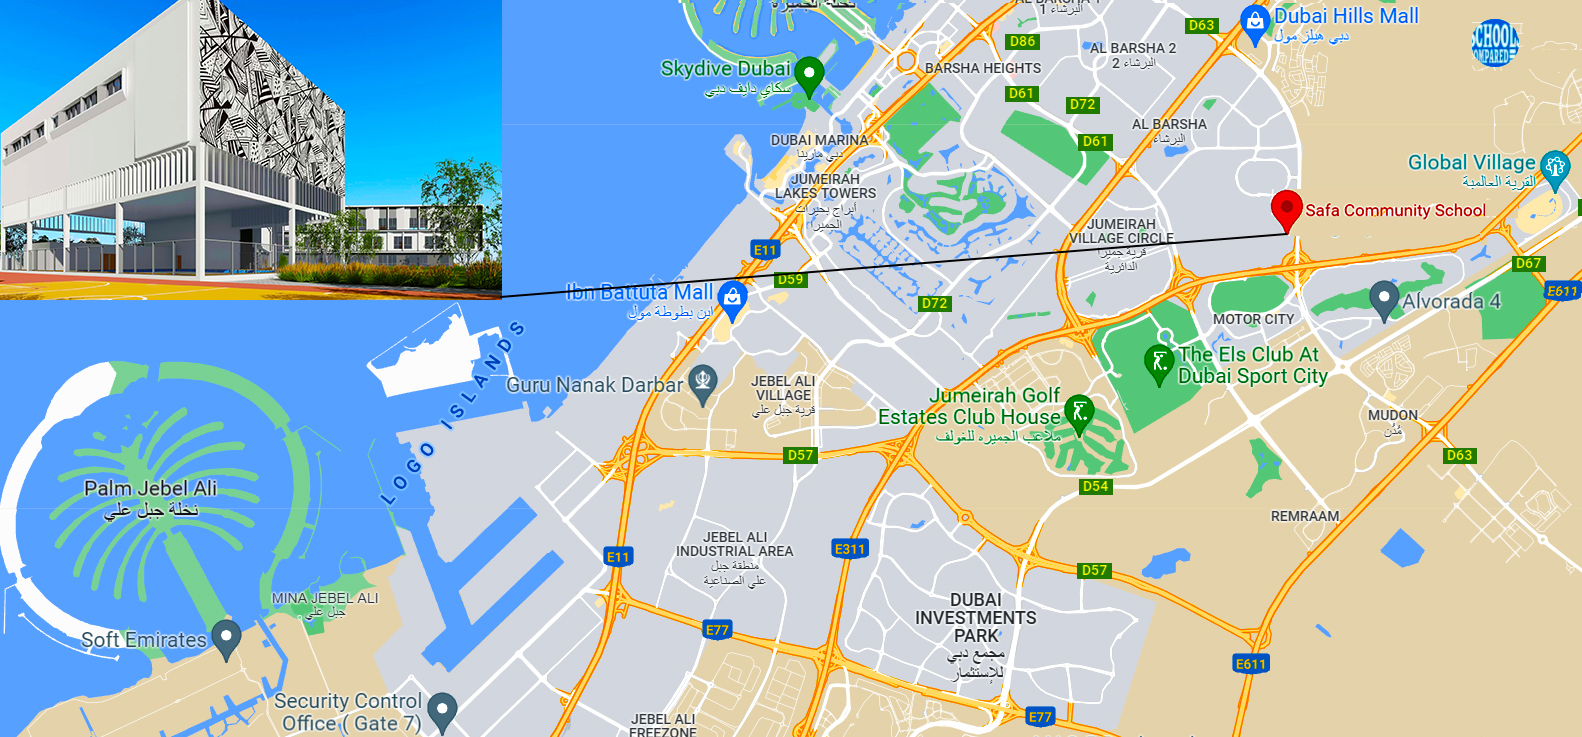 Bild mit einer Karte von Dubai, auf der der Standort der Safa Community School und eine Wegbeschreibung angegeben sind.